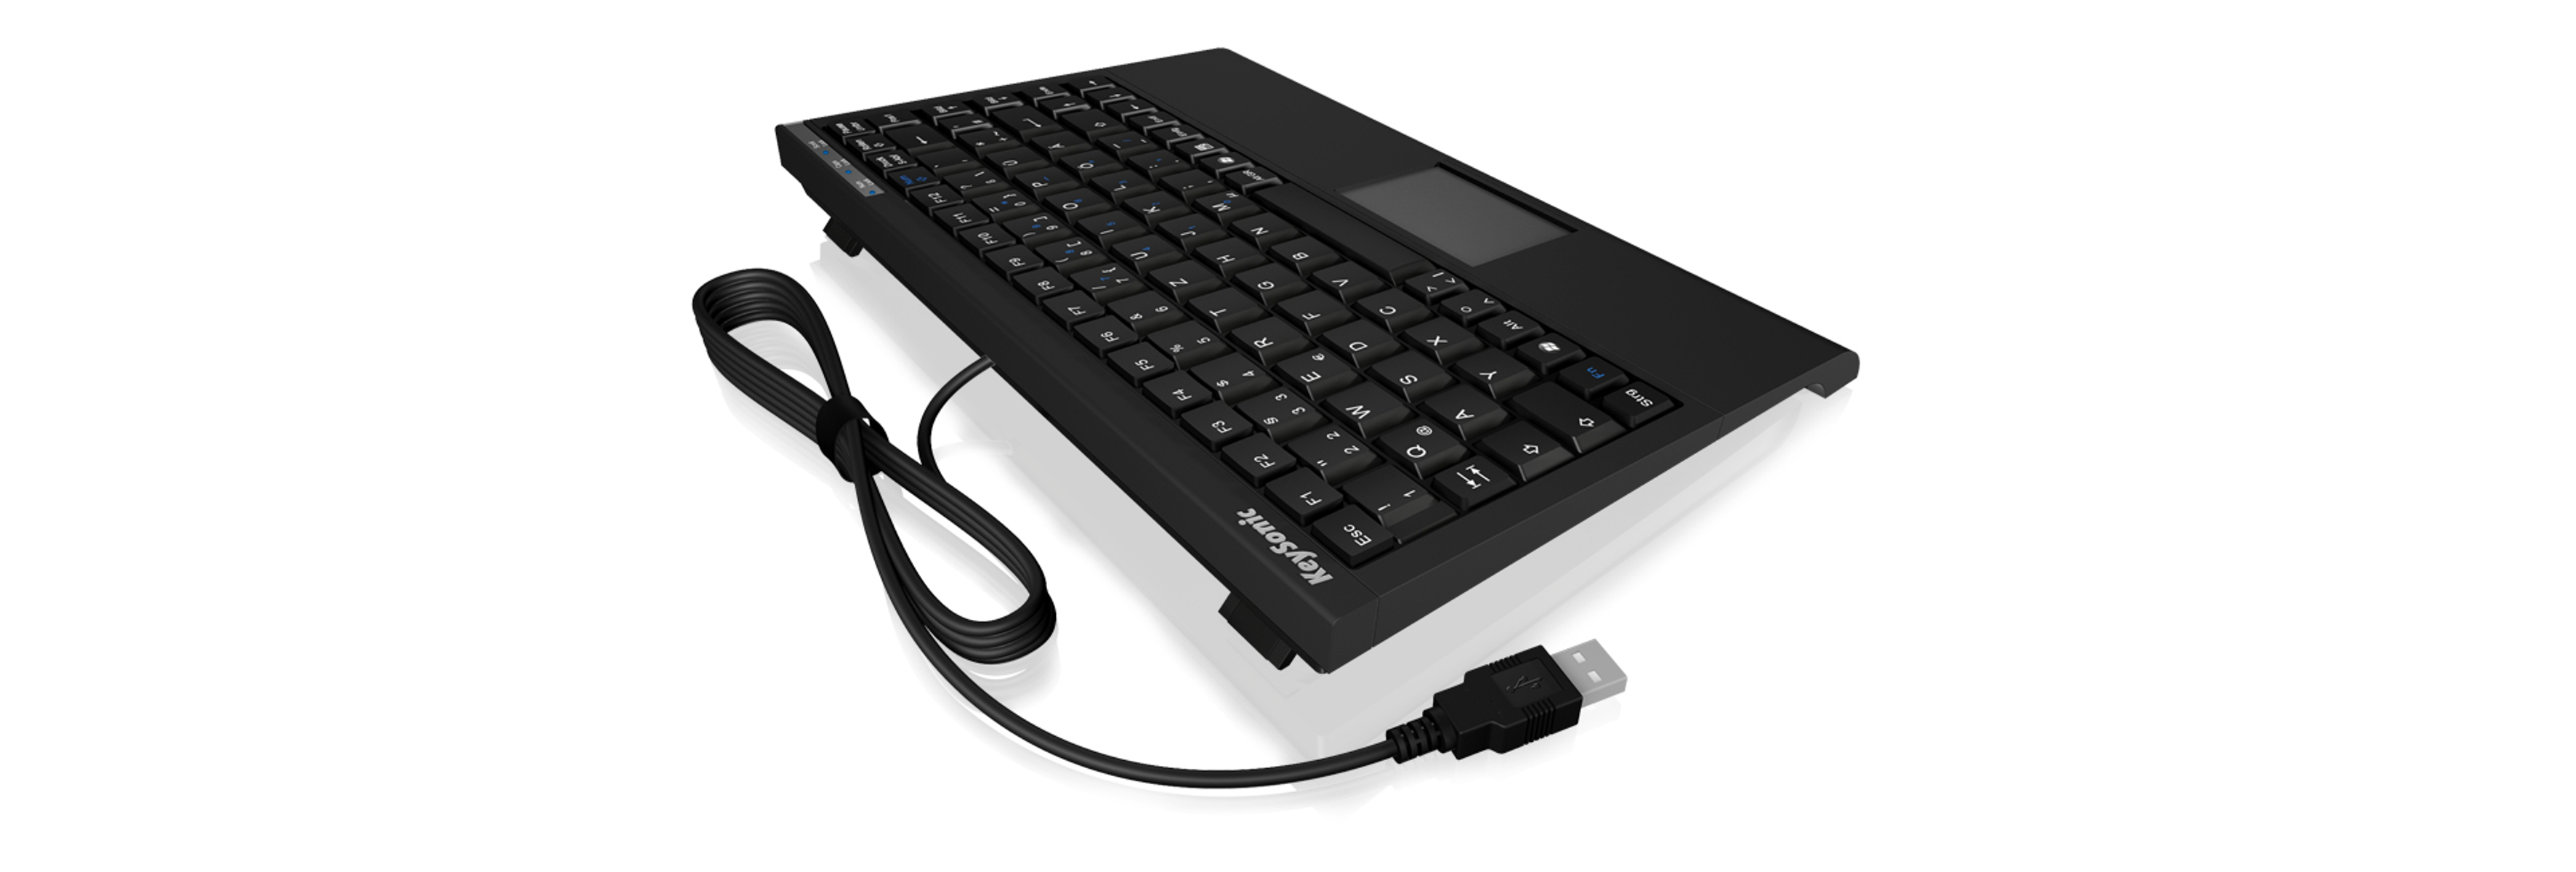 ICY BOX 12862, Tastatur